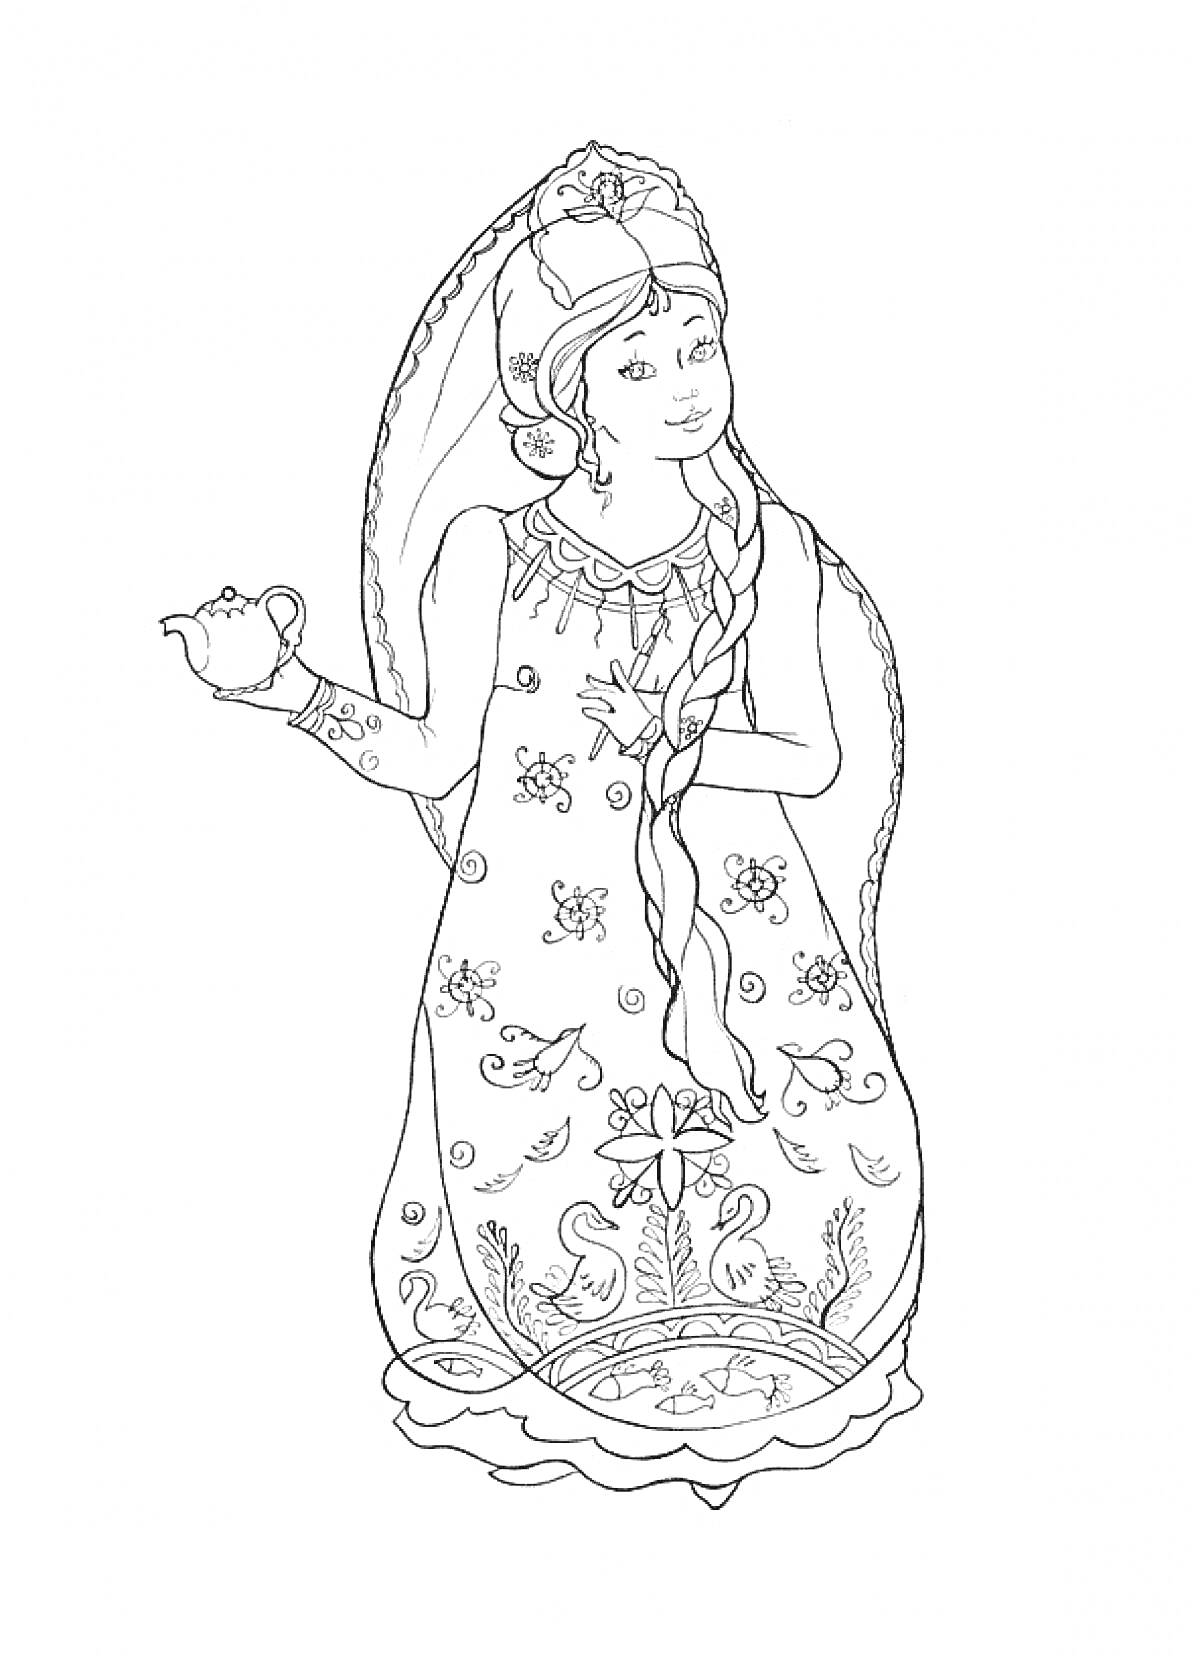 Девушка в традиционном платье с чашкой в руке